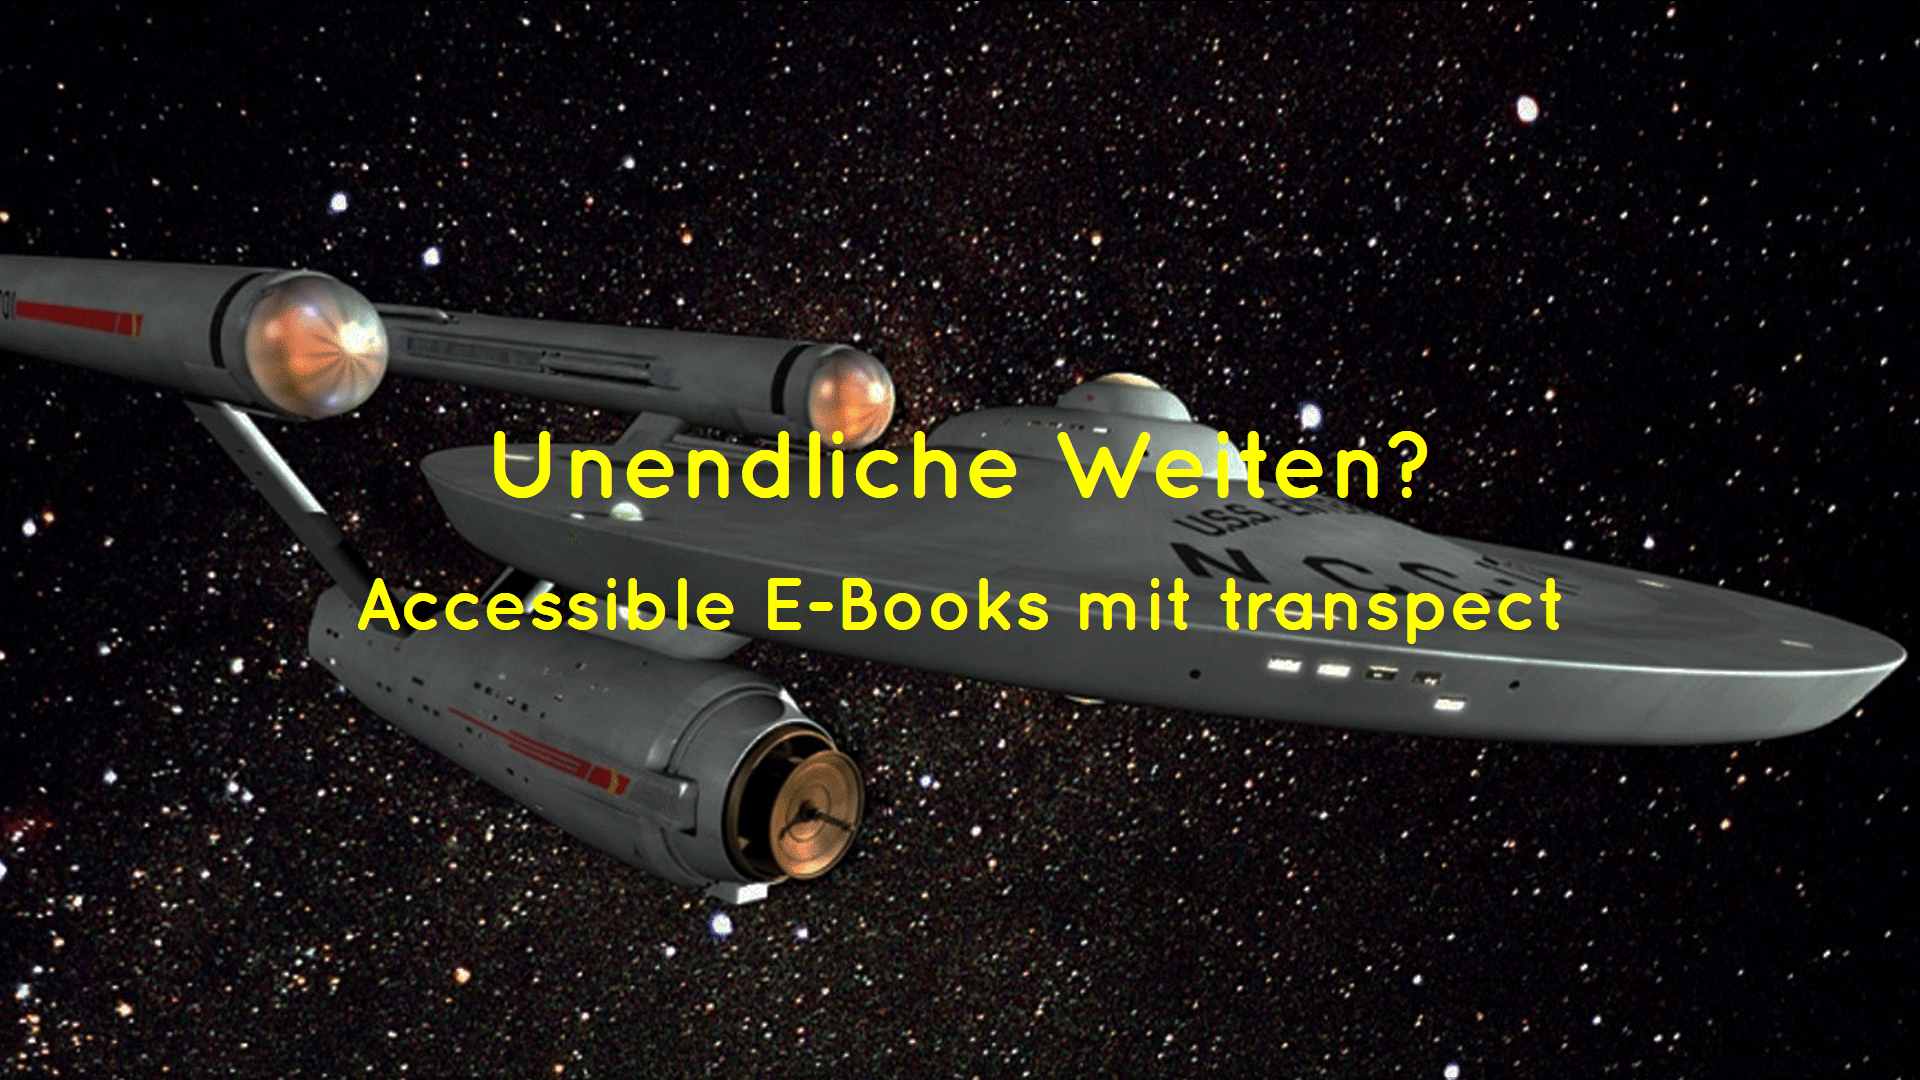 Titelbild mit Raumschiff Enterprise